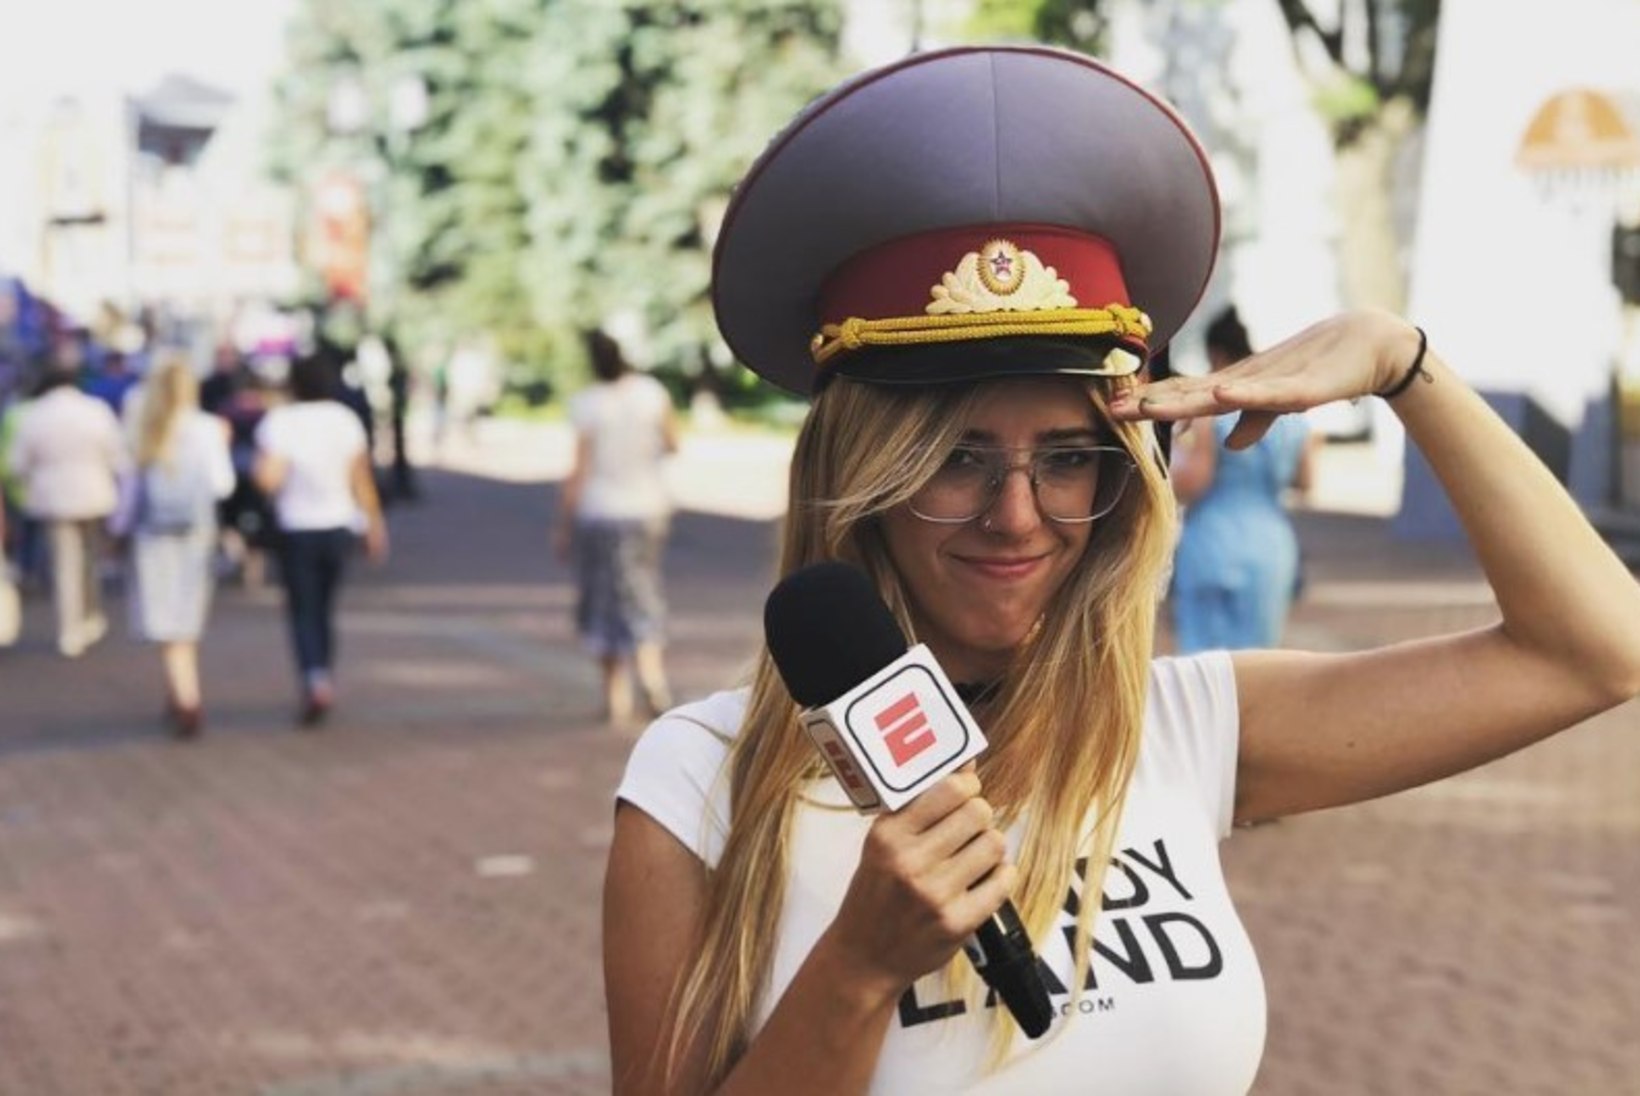 FOTOD | Hirmus kaotus! Argentiina spordiajakirjanik lasi rindu vähendada, sest need segasid intervjuude tegemist